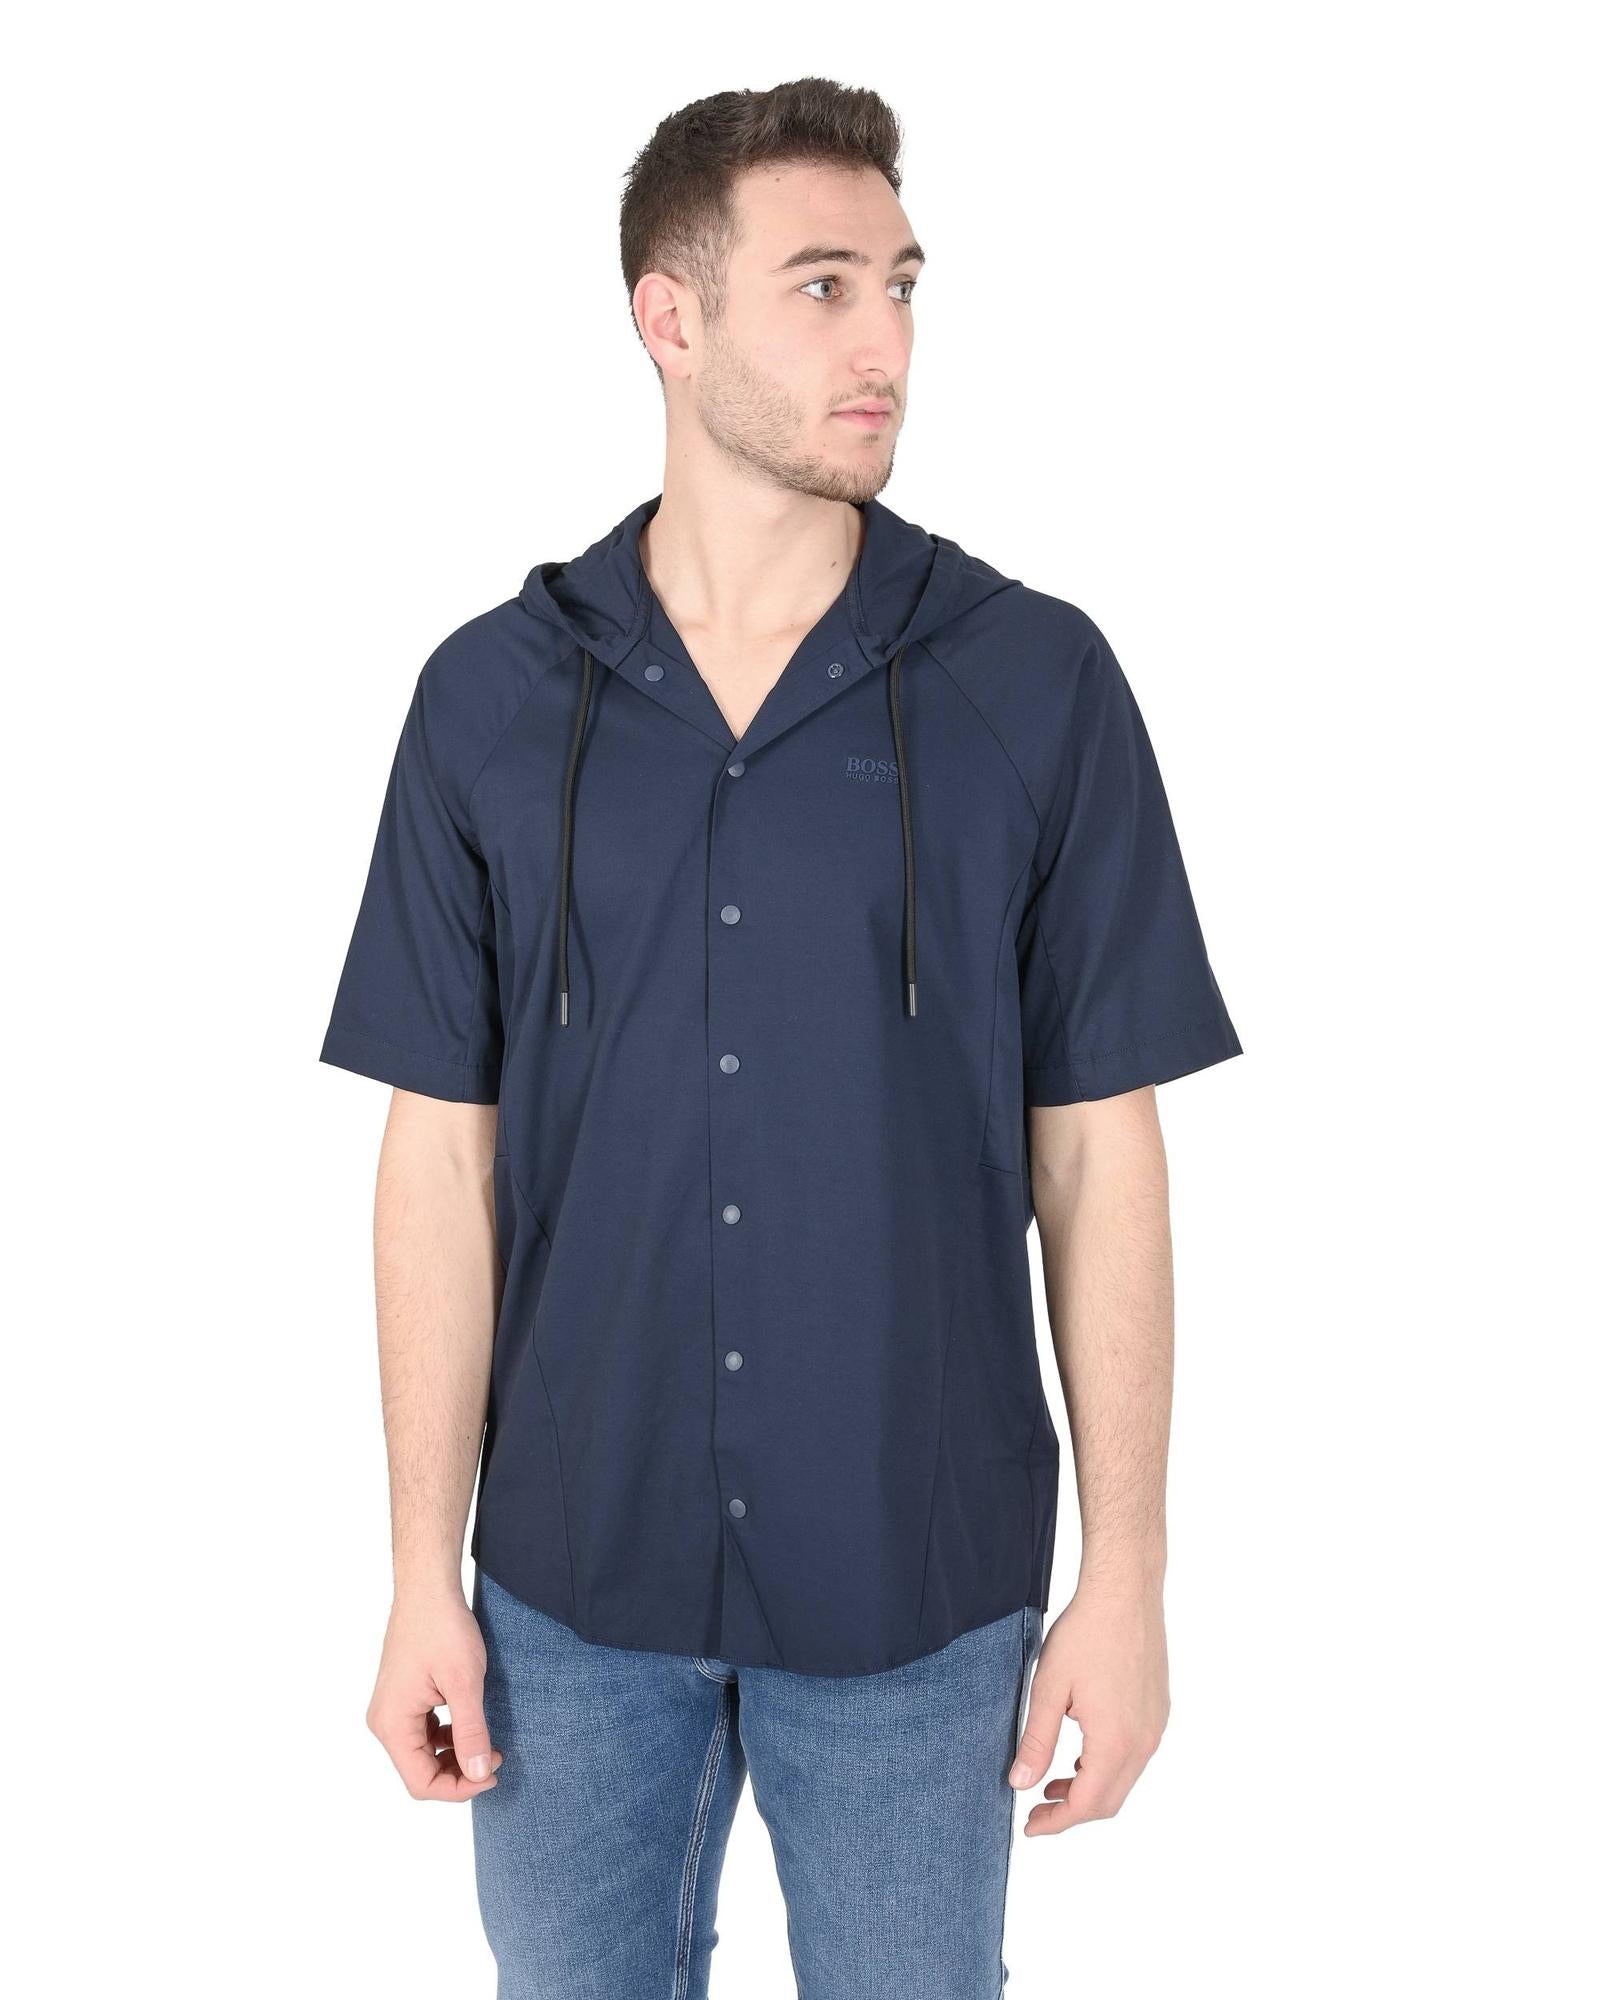 Men's Cotton Blend Navy Shirt in Navy blue - XL